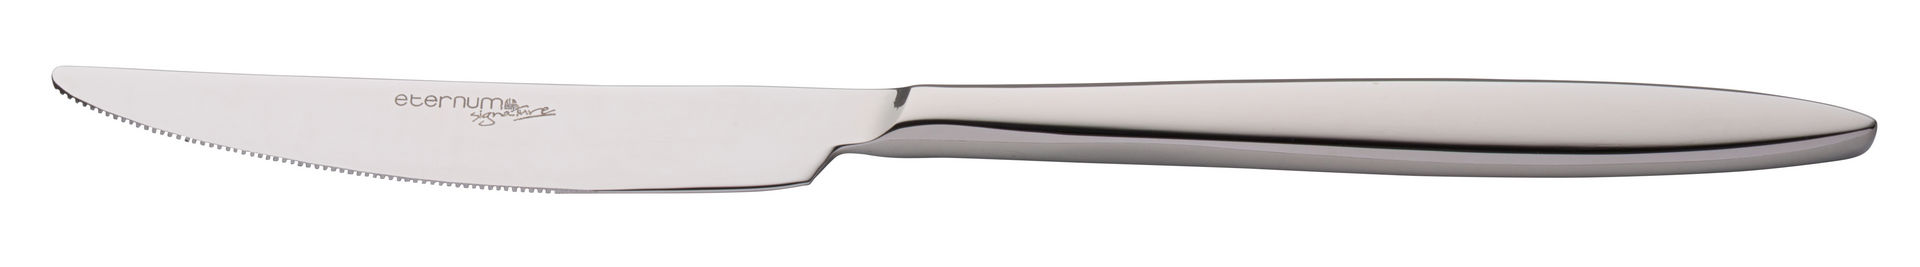 Adagio Table Knife - F22001-000000-B01012 (Pack of 12)